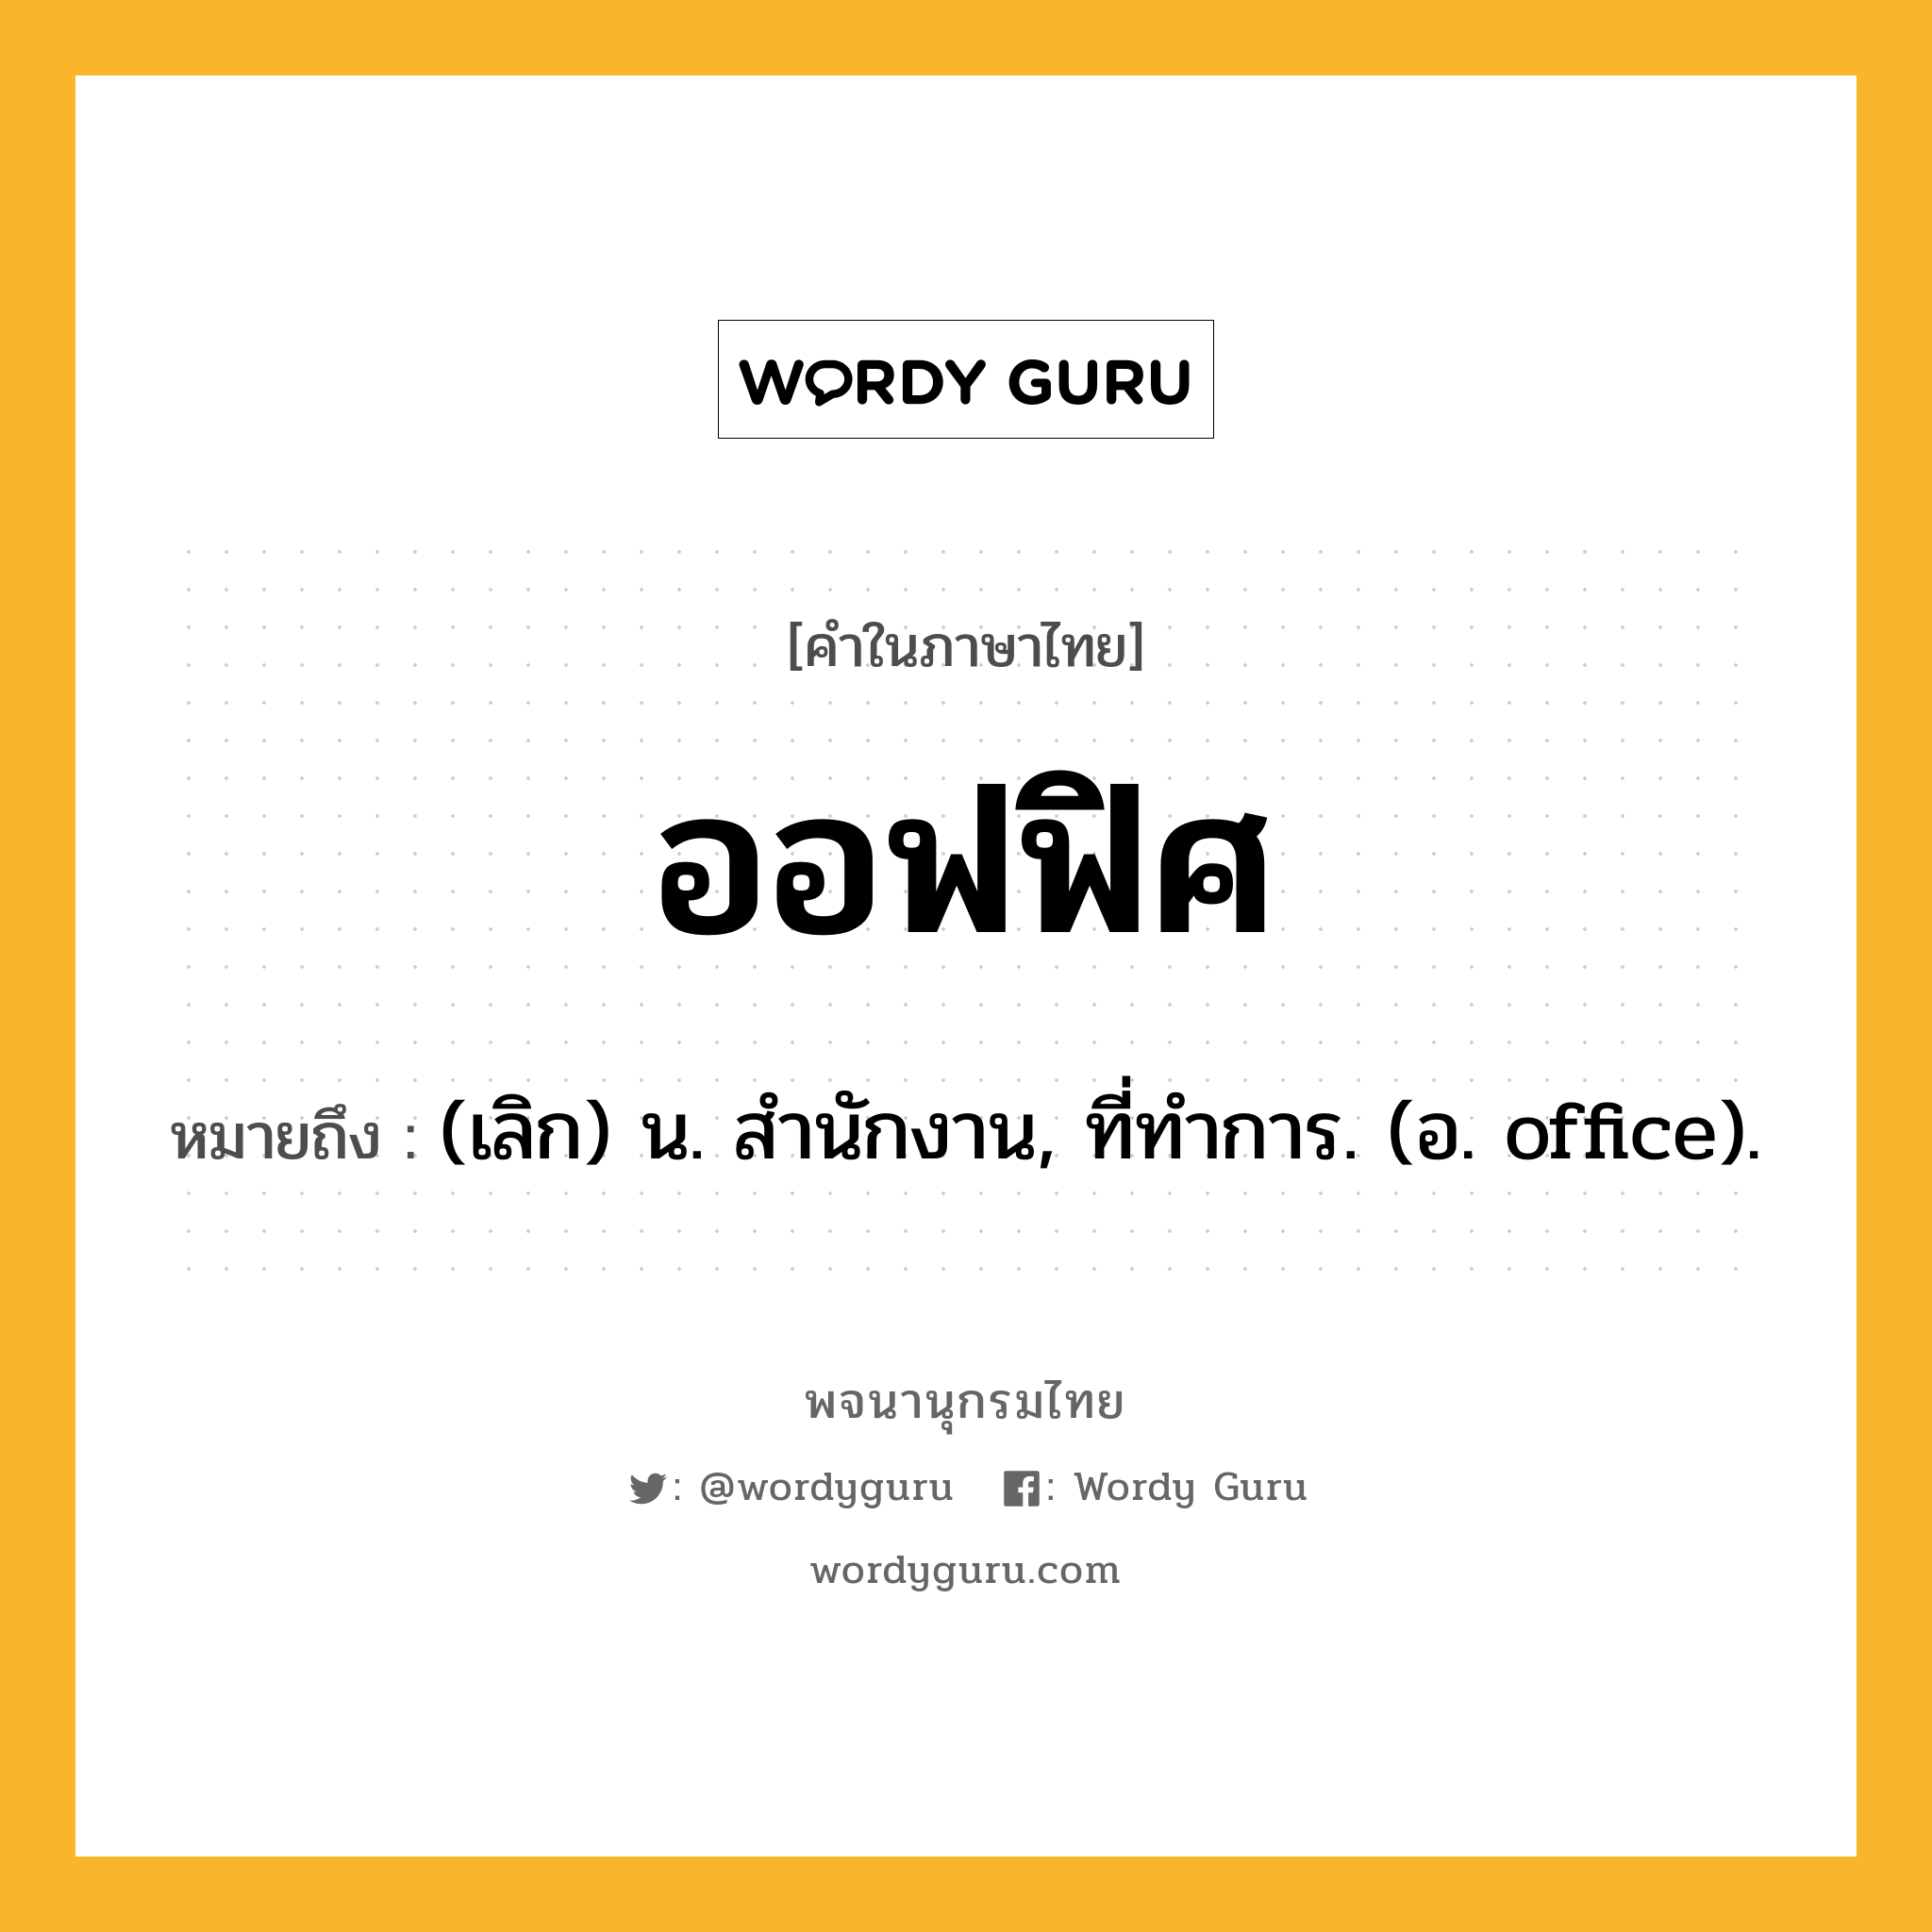 ออฟฟิศ หมายถึงอะไร?, คำในภาษาไทย ออฟฟิศ หมายถึง (เลิก) น. สํานักงาน, ที่ทําการ. (อ. office).